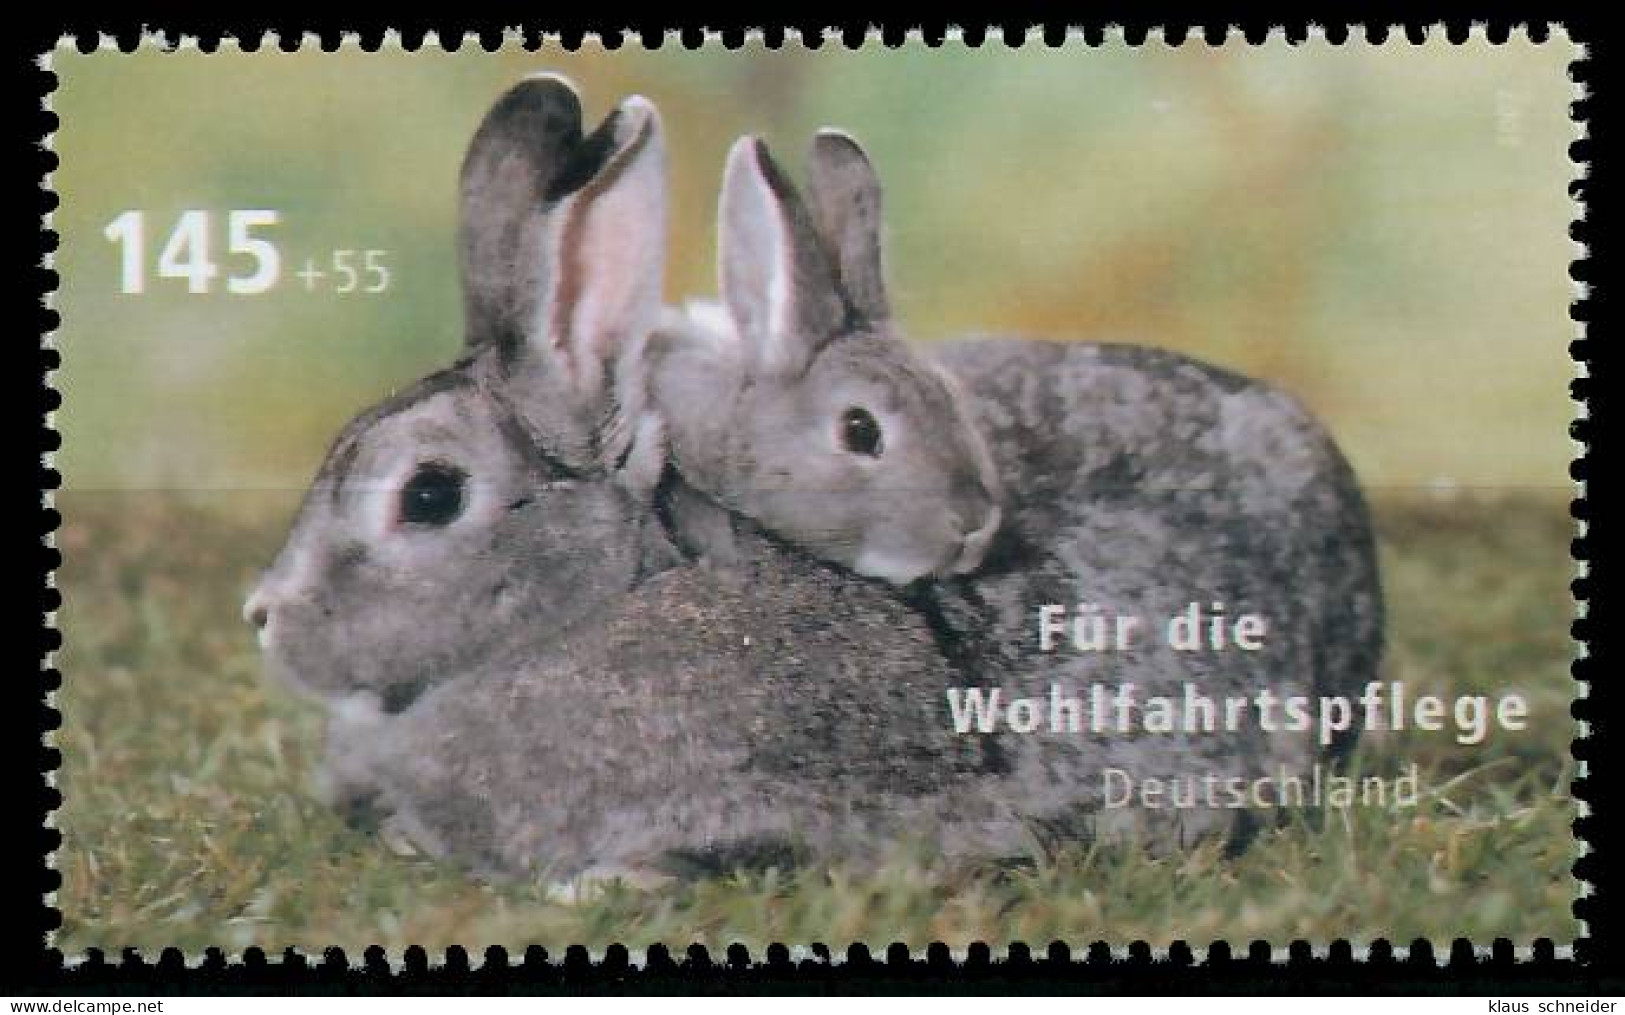 BRD BUND 2007 Nr 2633 Postfrisch S3EF4EE - Unused Stamps